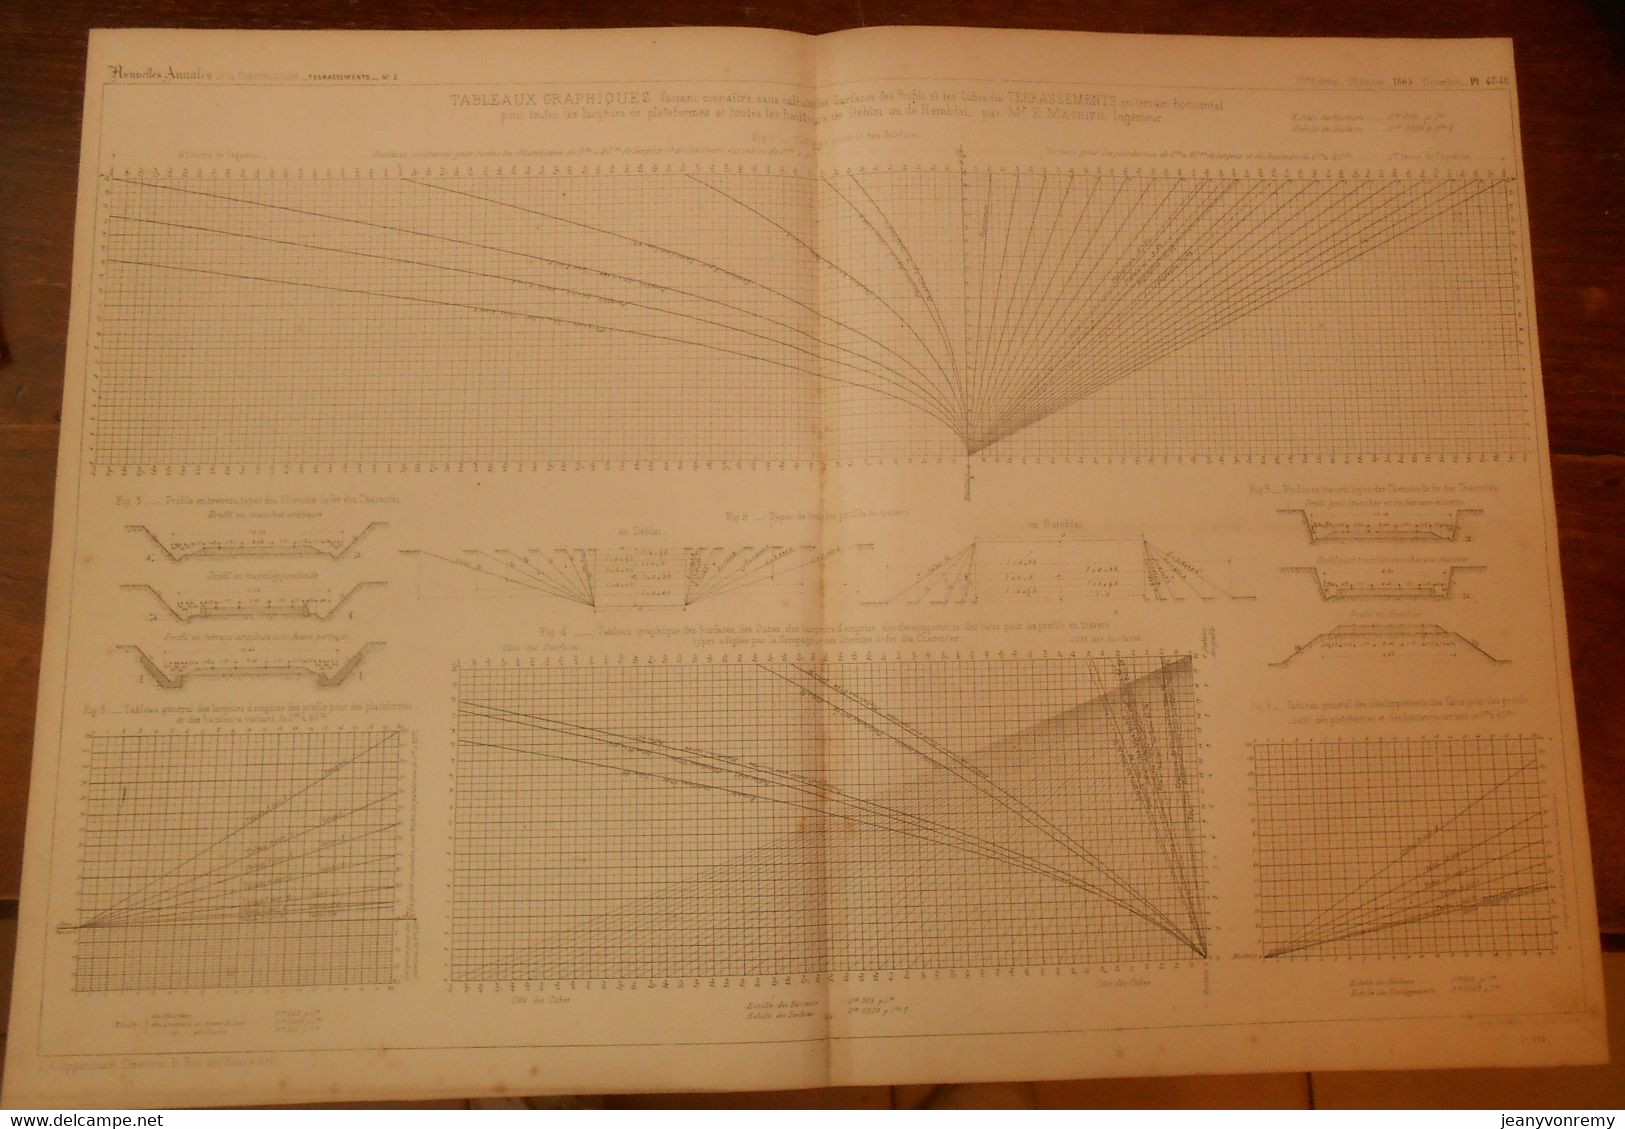 Plan De Tableaux Graphiques. Terrassements. 1865. - Autres Plans